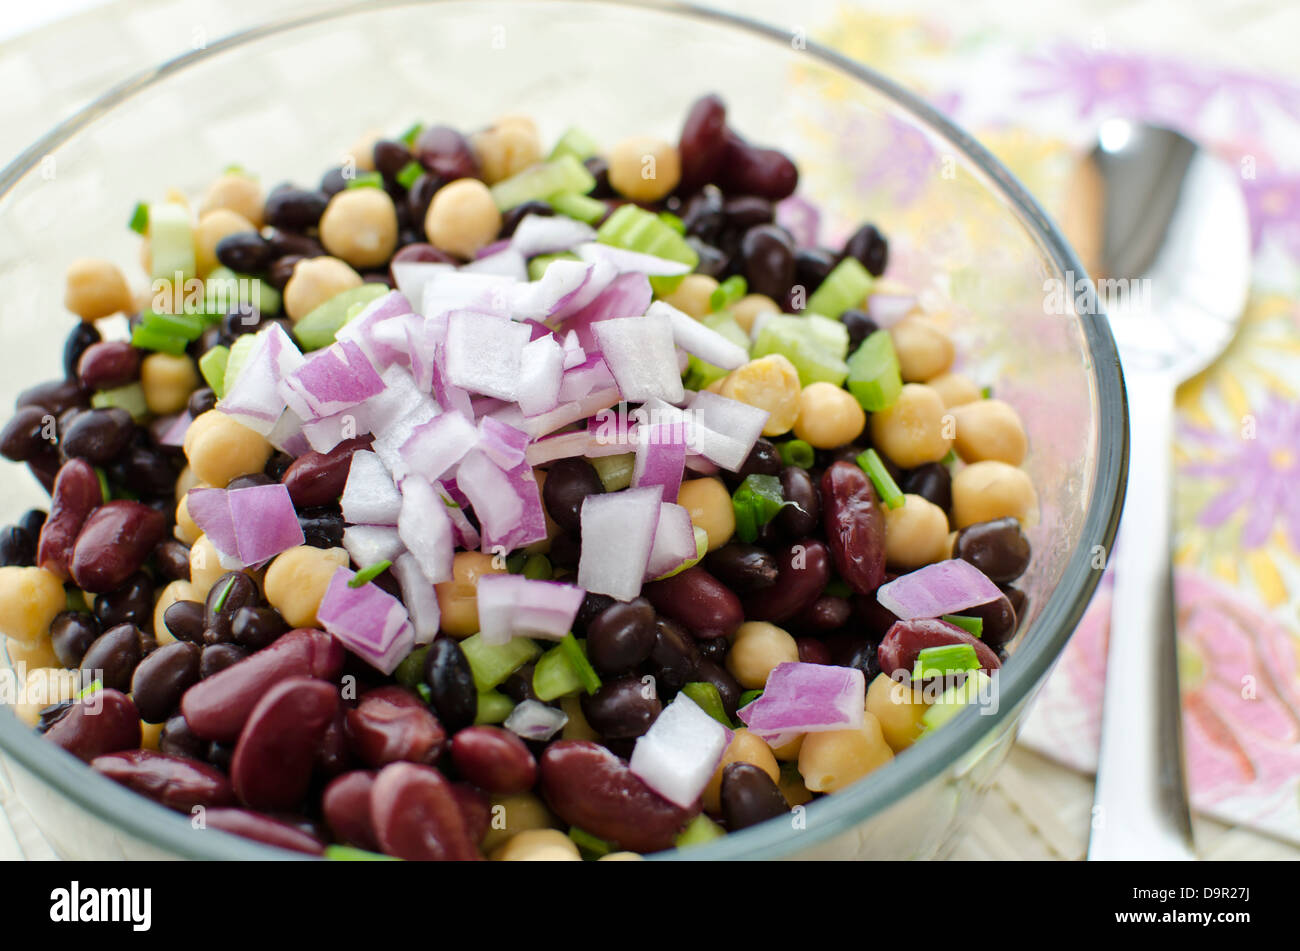 Schüssel mit Bohnen-Salat mit Kichererbsen, schwarzen Bohnen und Kidney-Bohnen frisch zubereitet. Garniert mit gehackten roten Zwiebeln. Stockfoto